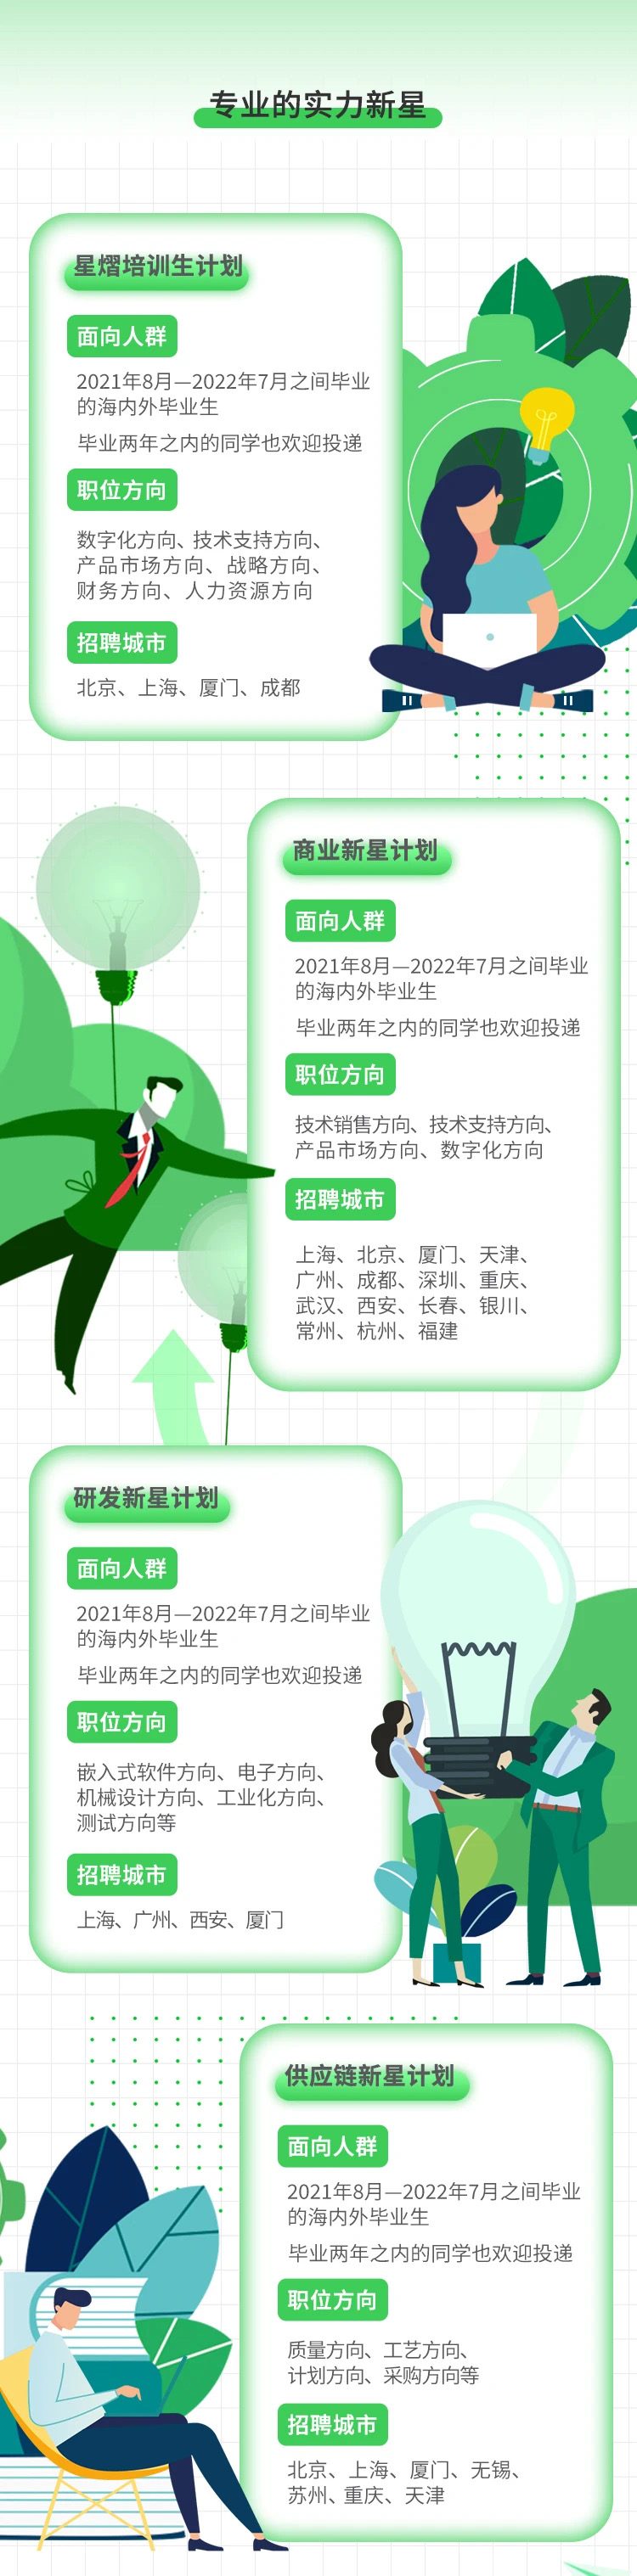 WeChat Image_20210924183058.jpg